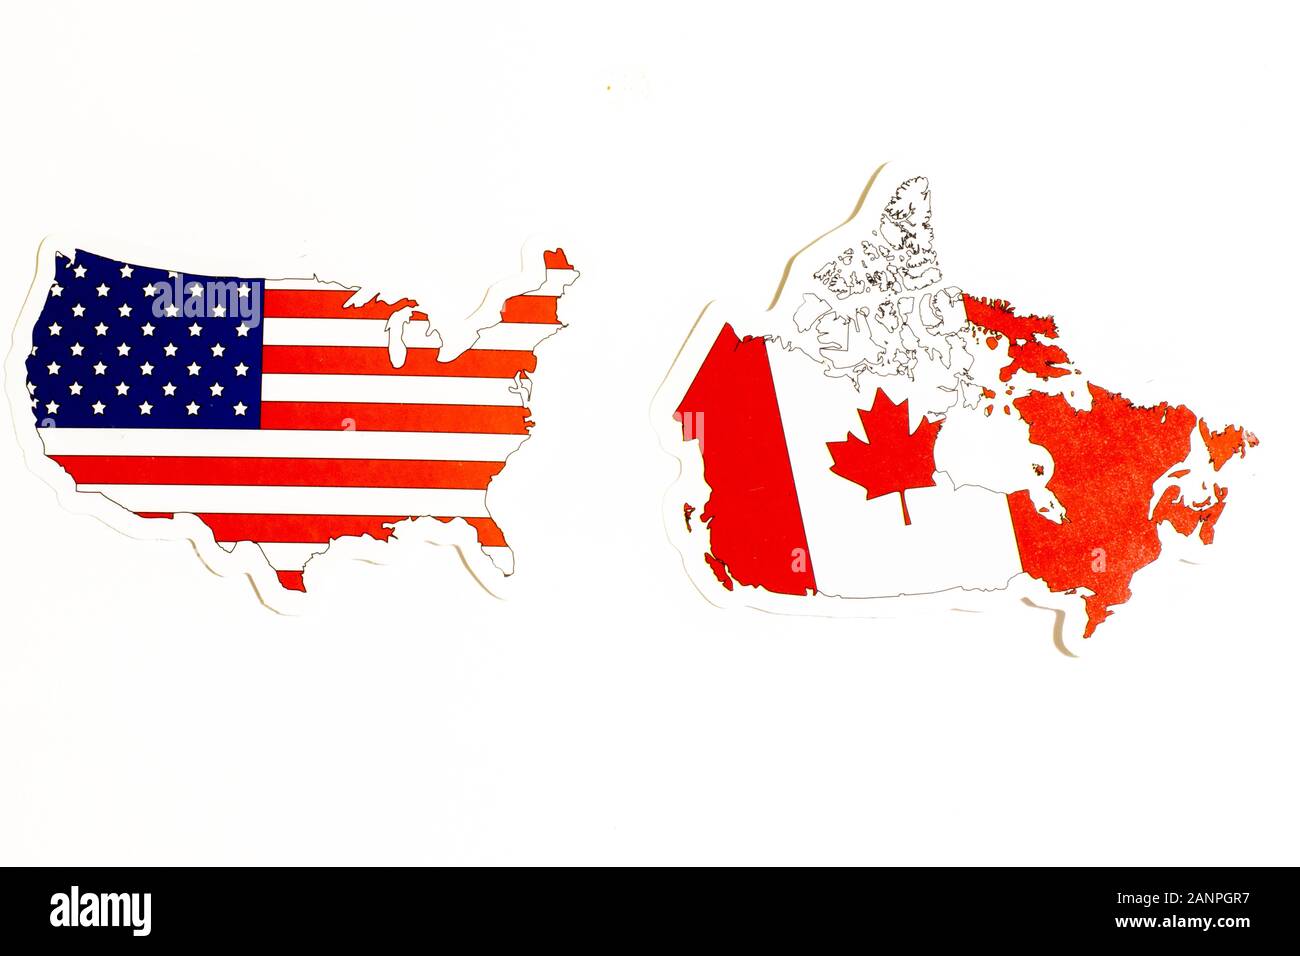 Los Angeles, Kalifornien, USA - 17. Januar 2020: Nationalflaggen der USA und Kanadas auf weißem Hintergrund mit Copy-Space, Illustrative Editorial Stockfoto